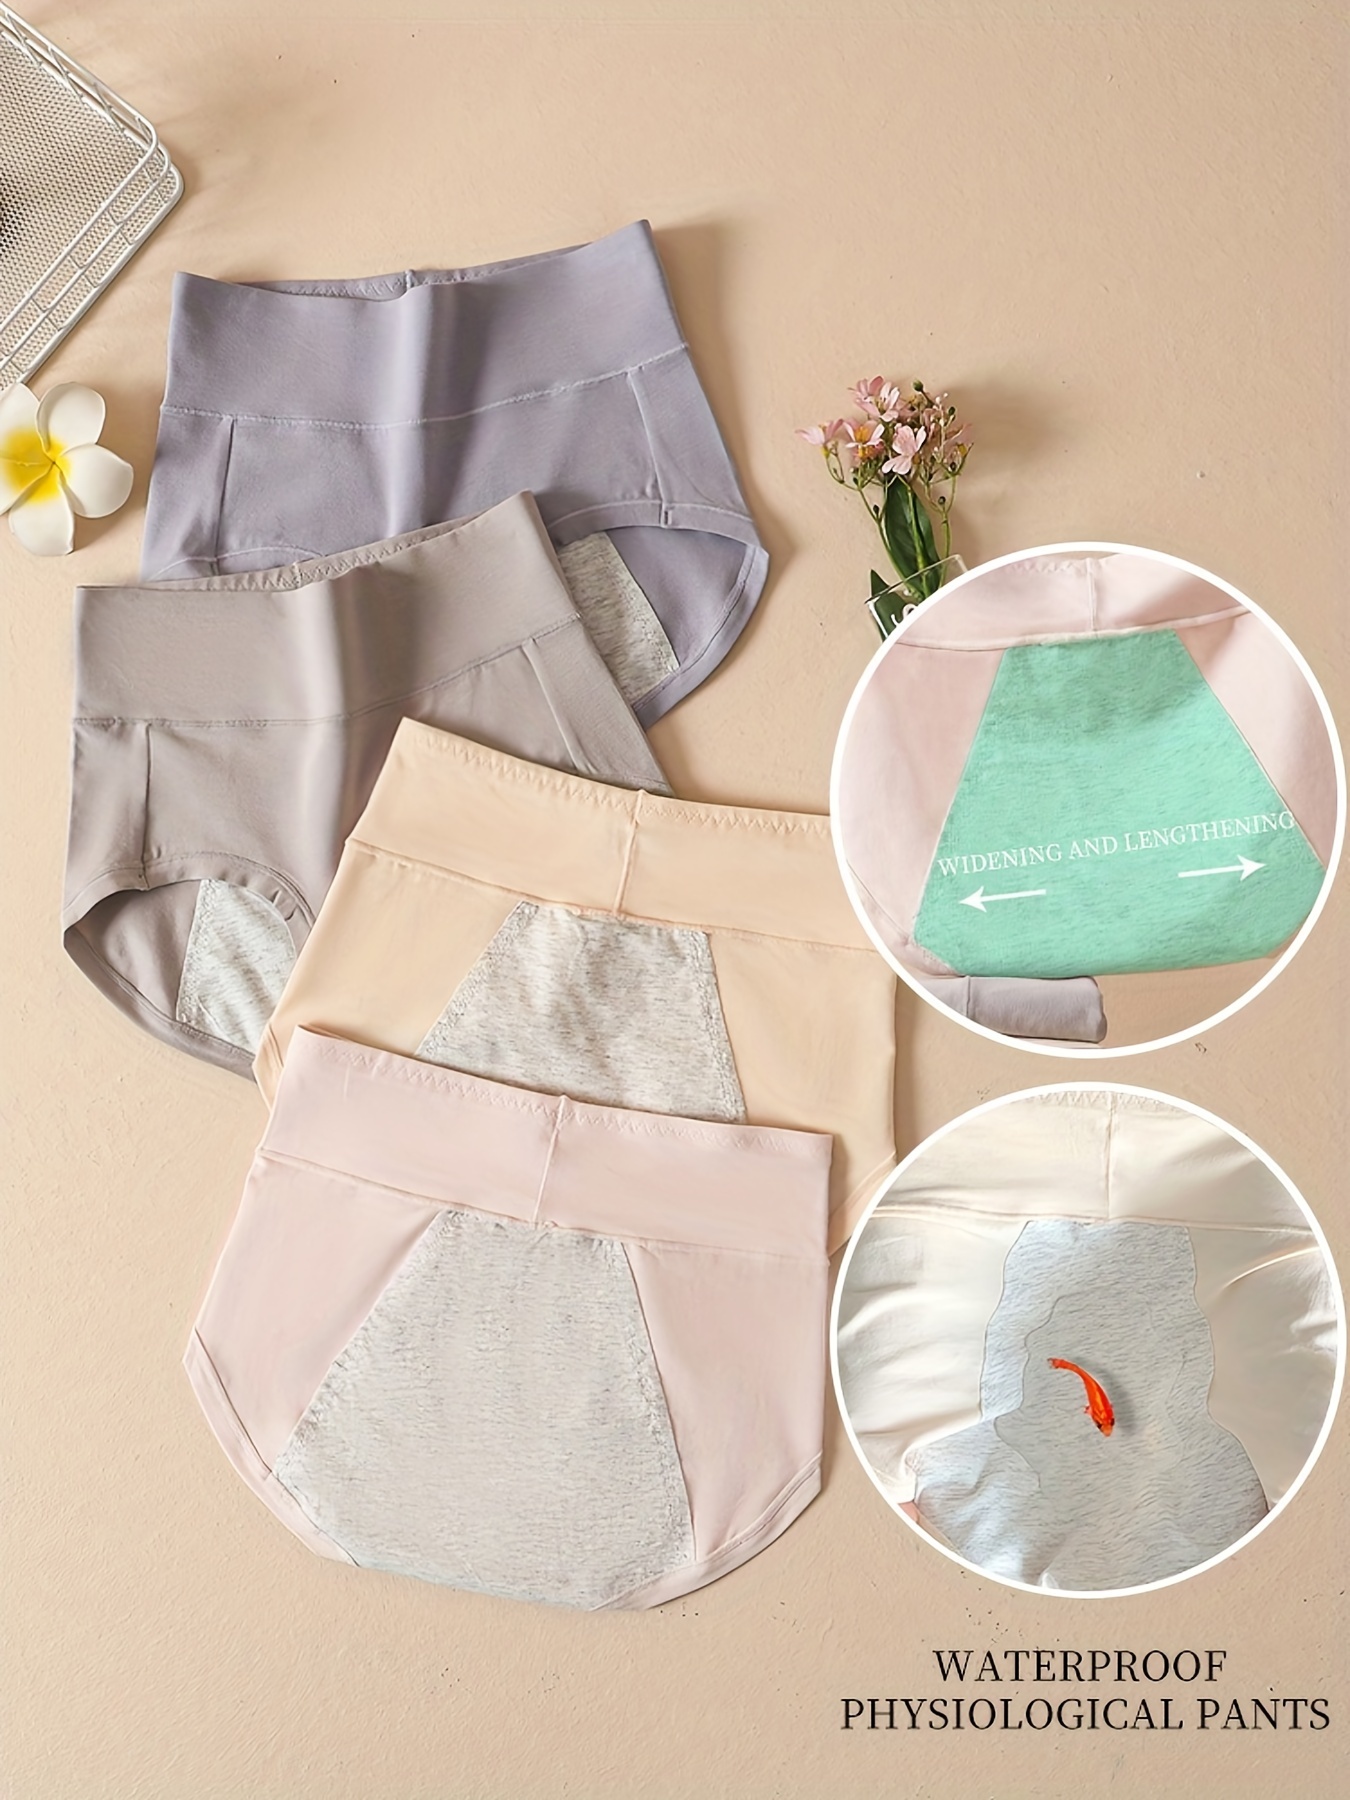 Leak Proof Menstrual Panties Physiological Underwear Womens Comfortable  Cotton Panties Breathable Female Waterproof Briefs